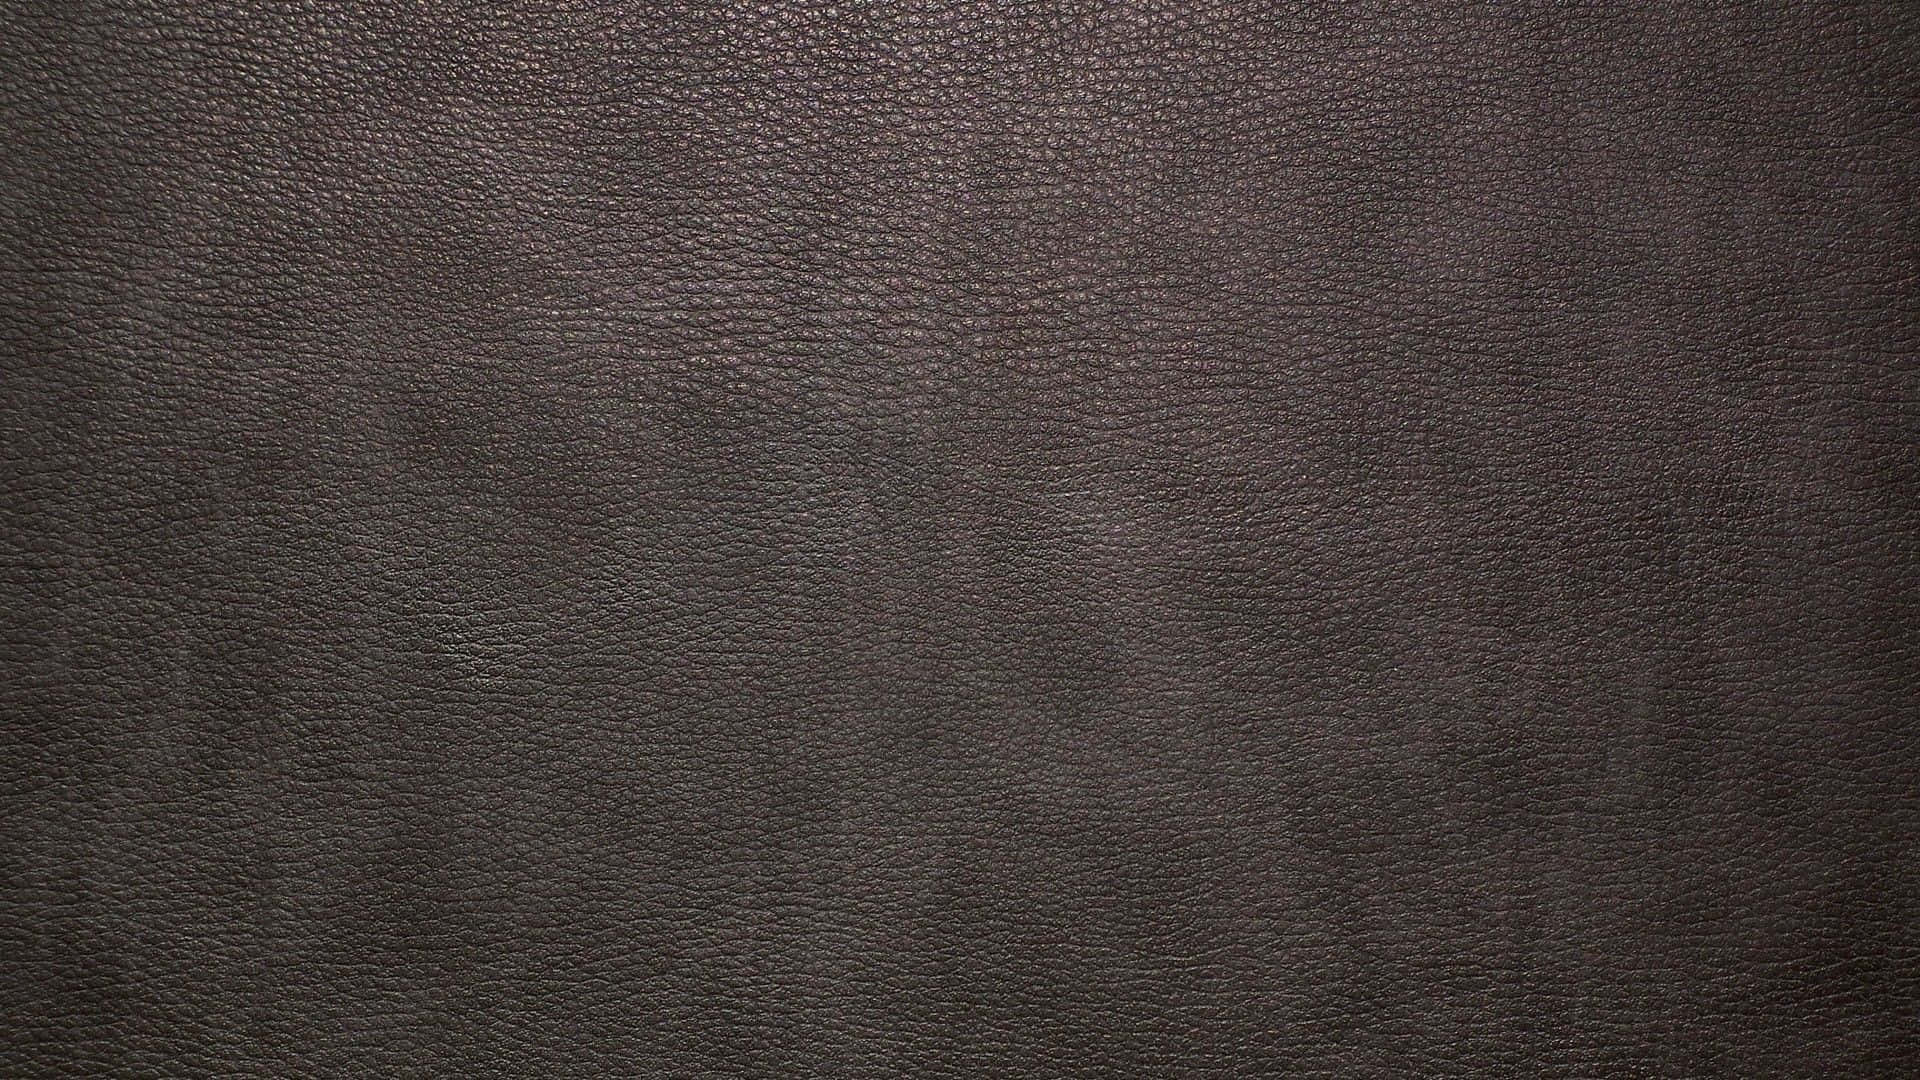 Ennärbild Av En Mörkbrun Läderbakgrund.